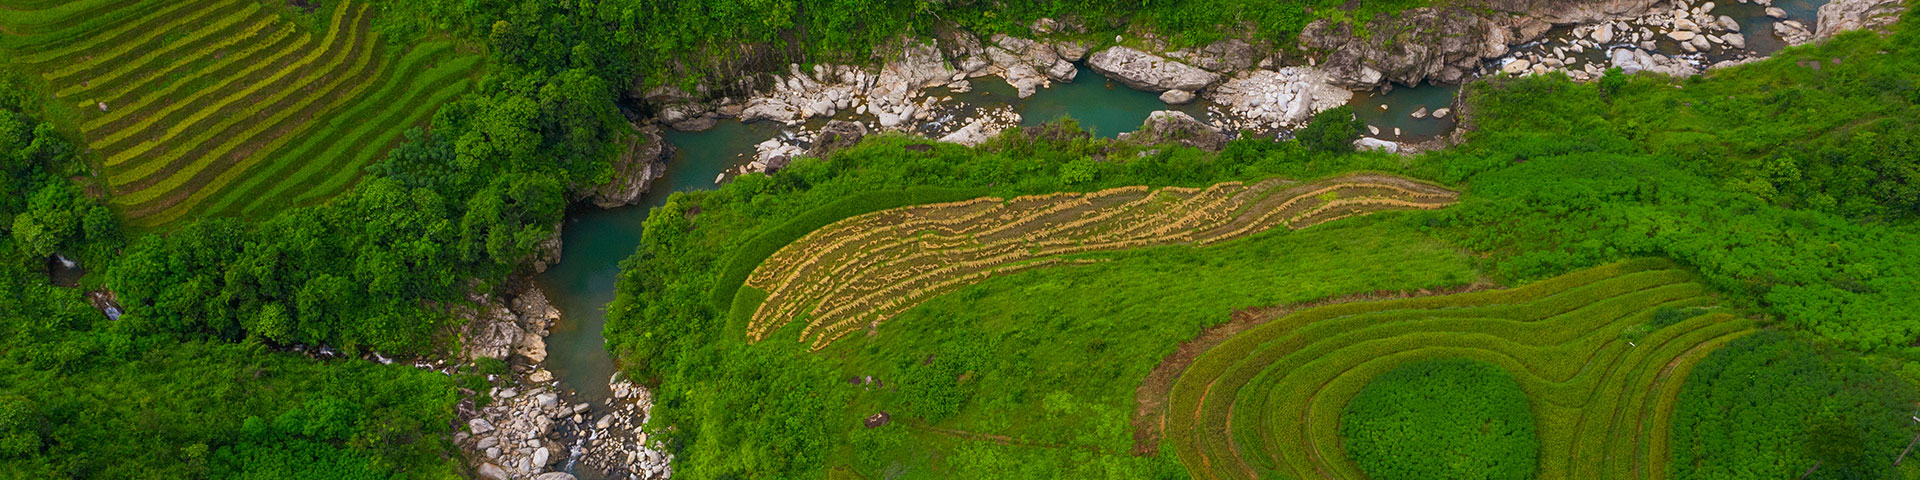 Luftaufnahme eines Baches, der von einer grünen Landschaft umgeben ist.